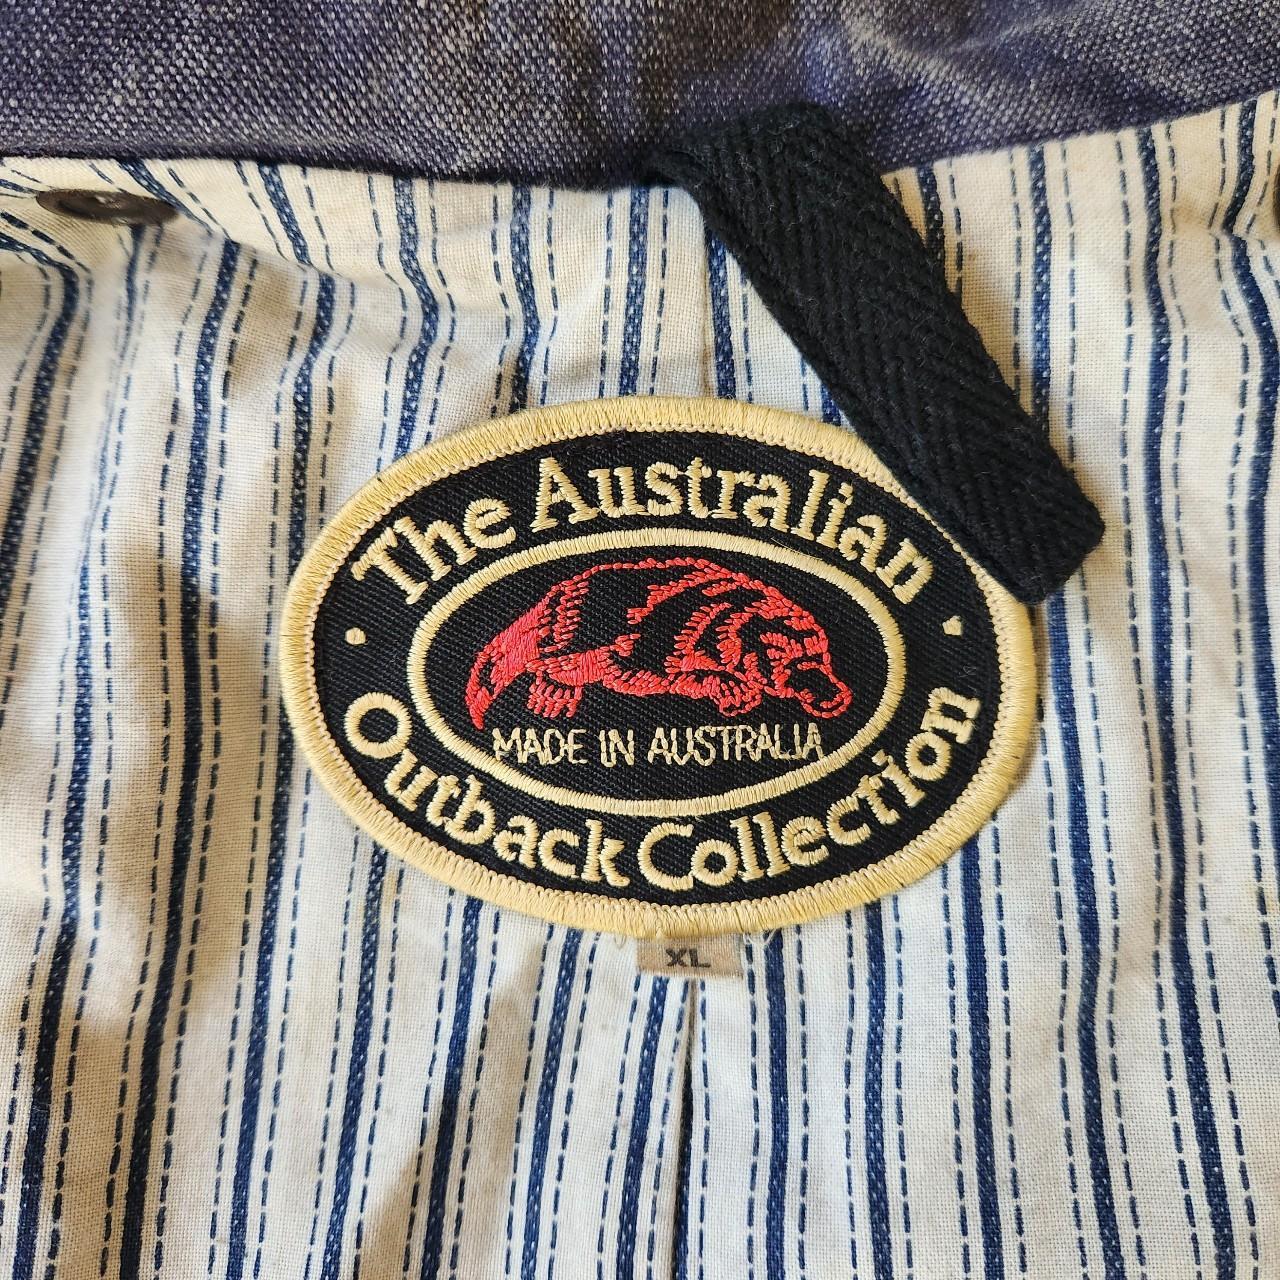 90s Australian Outback Duster Trench Coat DM for... - Depop